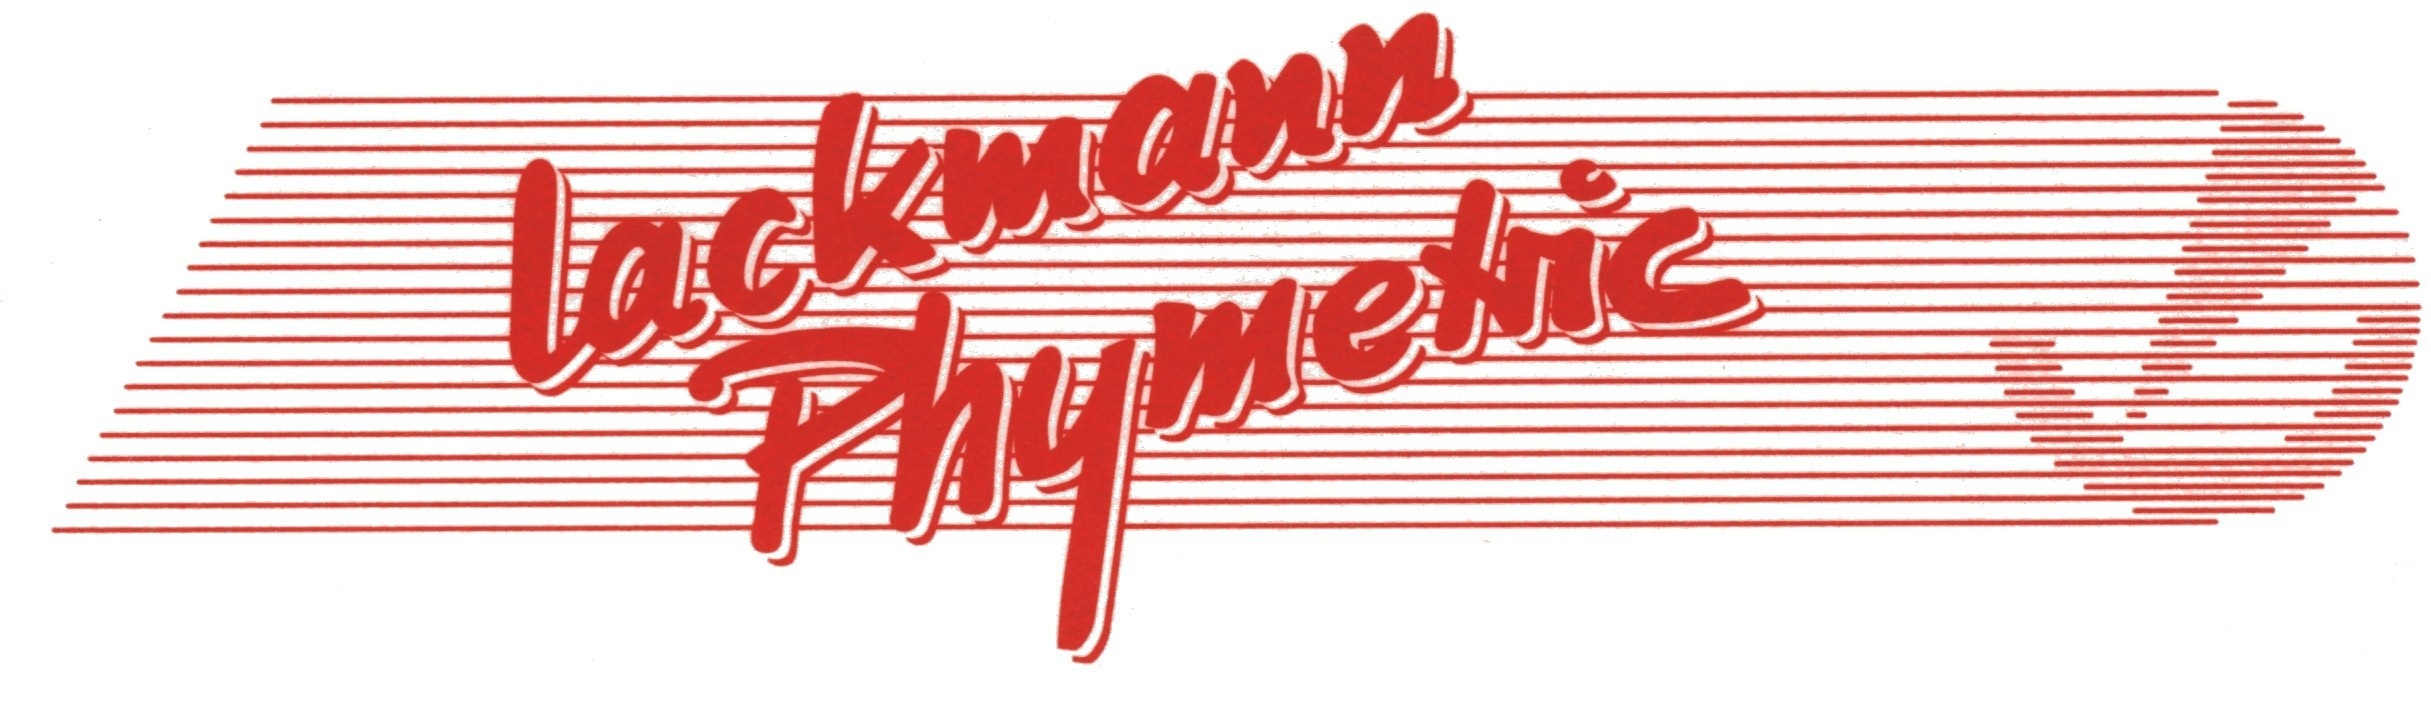 Lackmann Phymetric